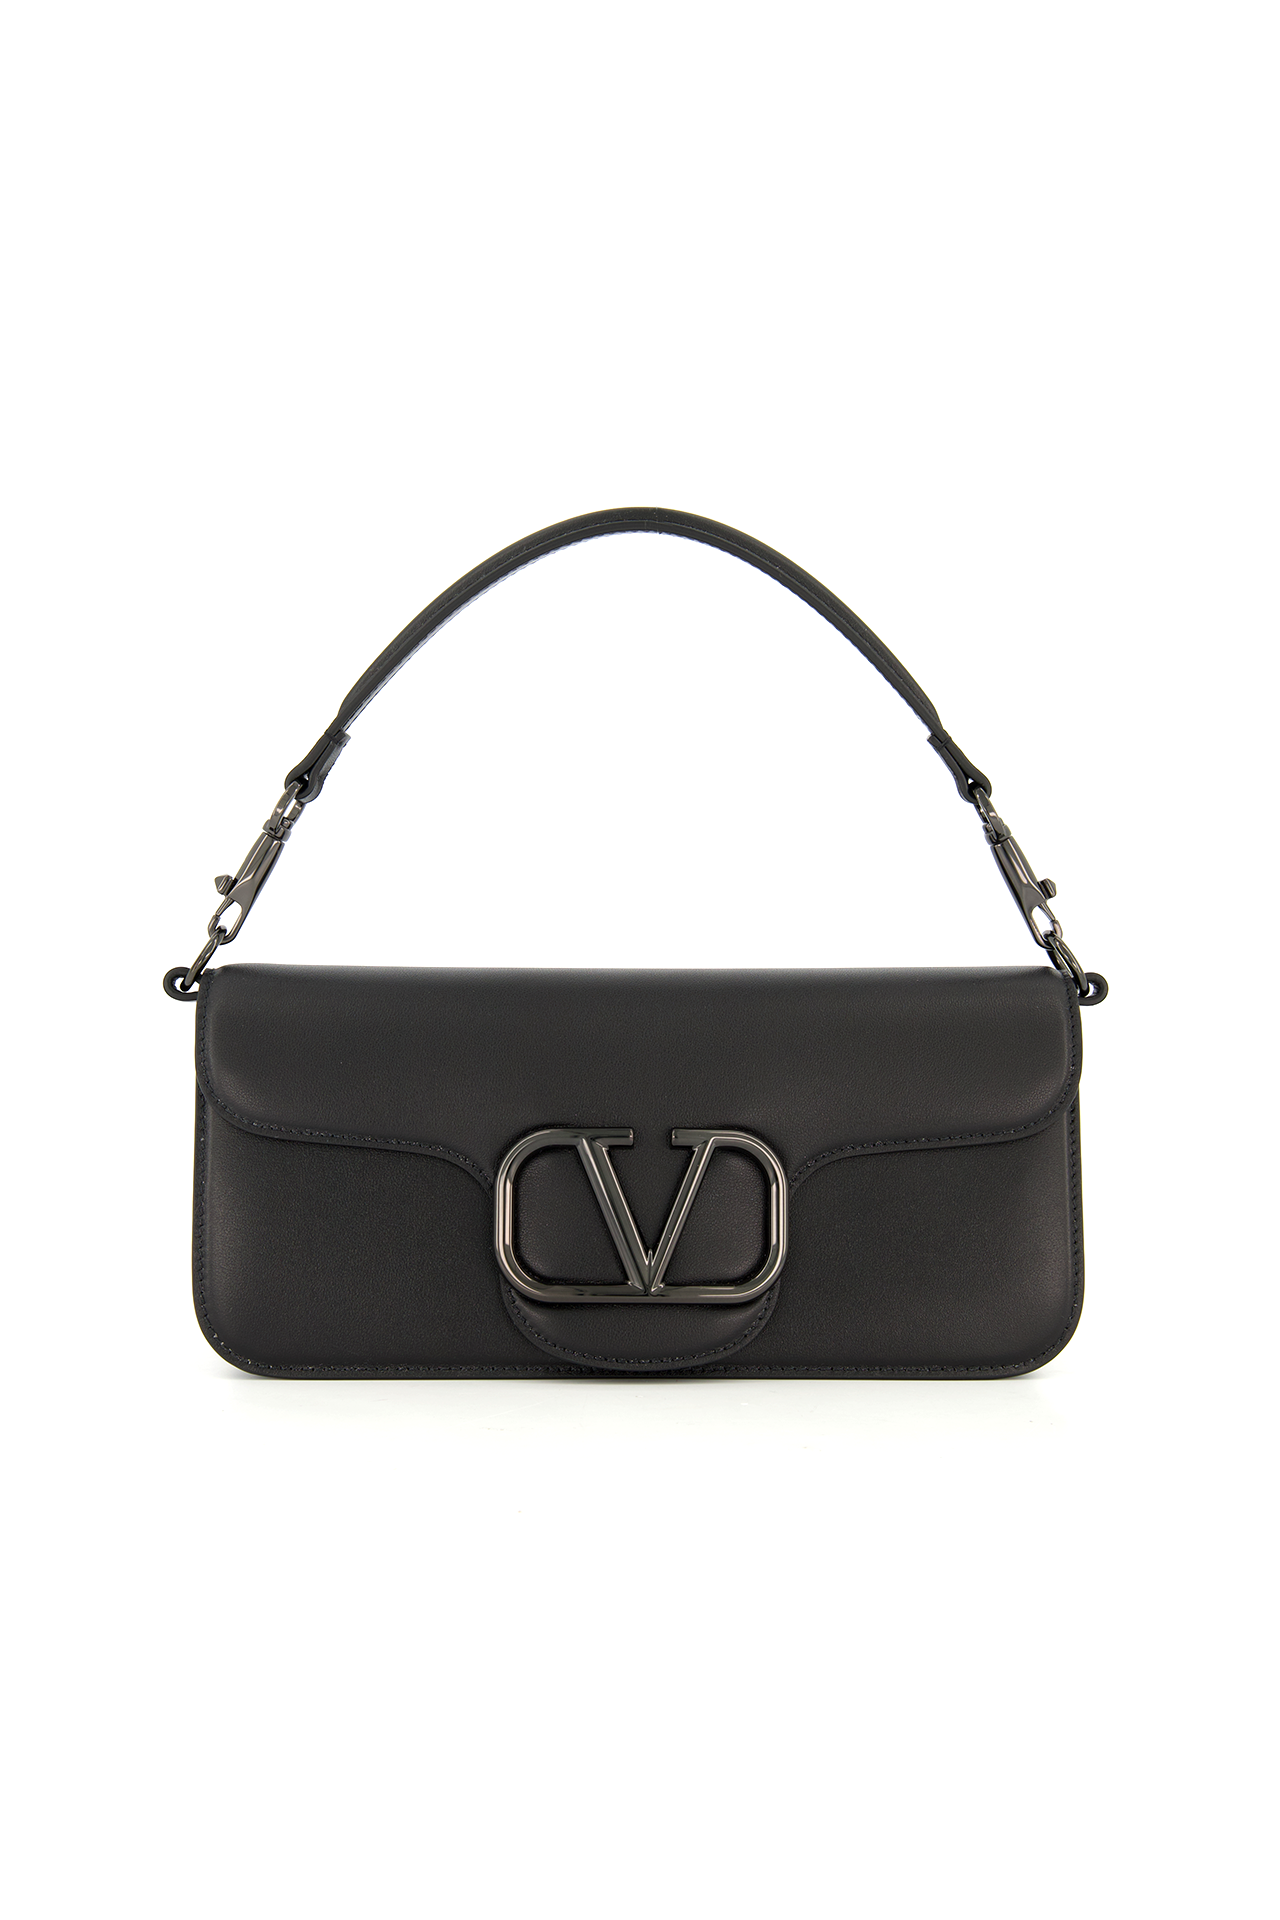 Valentino Garavani Women's Loco Shoulder Bag Tonal | A.K. Rikk's